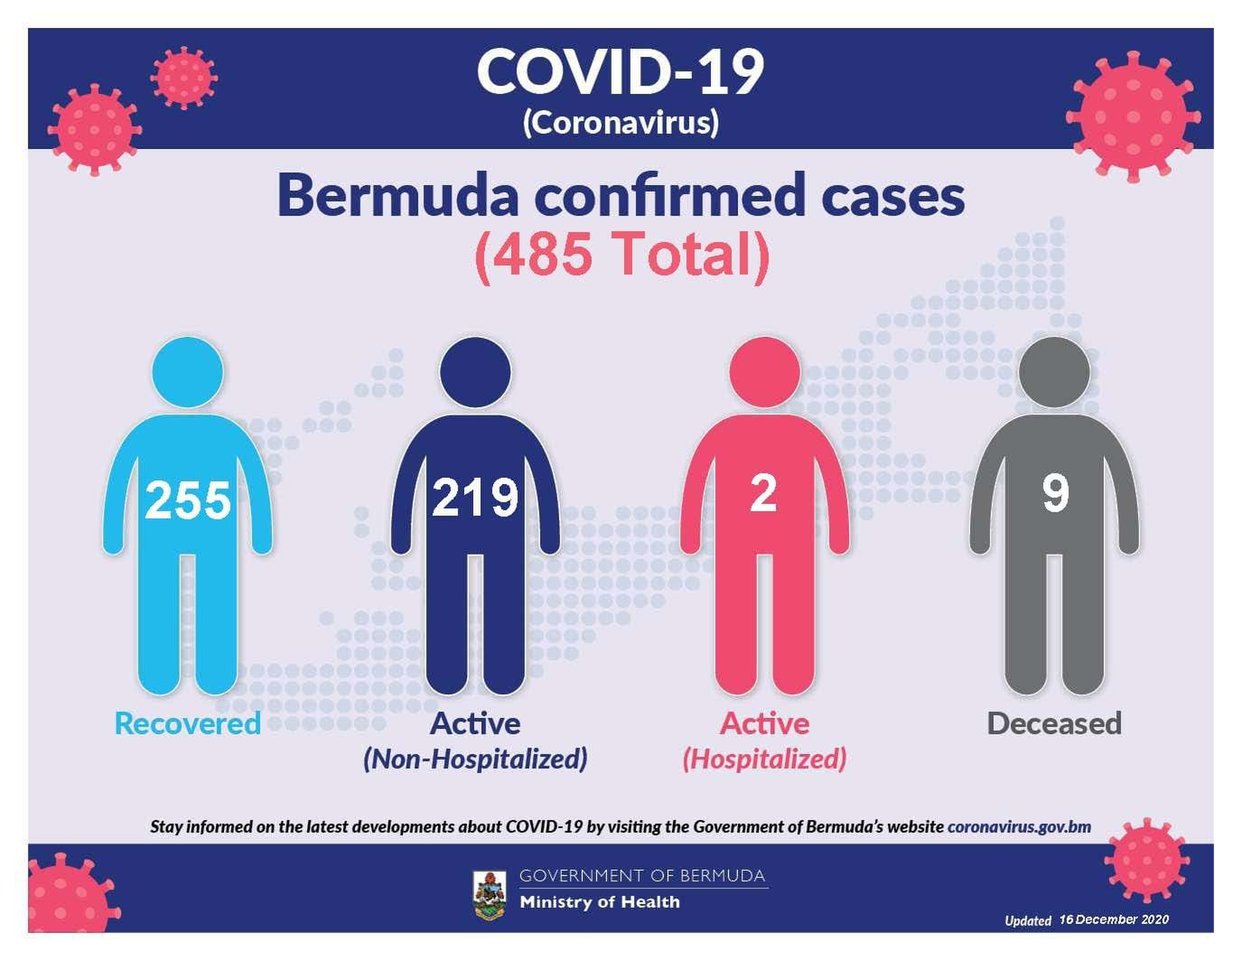 18 new COVID-19 cases reported in Bermuda